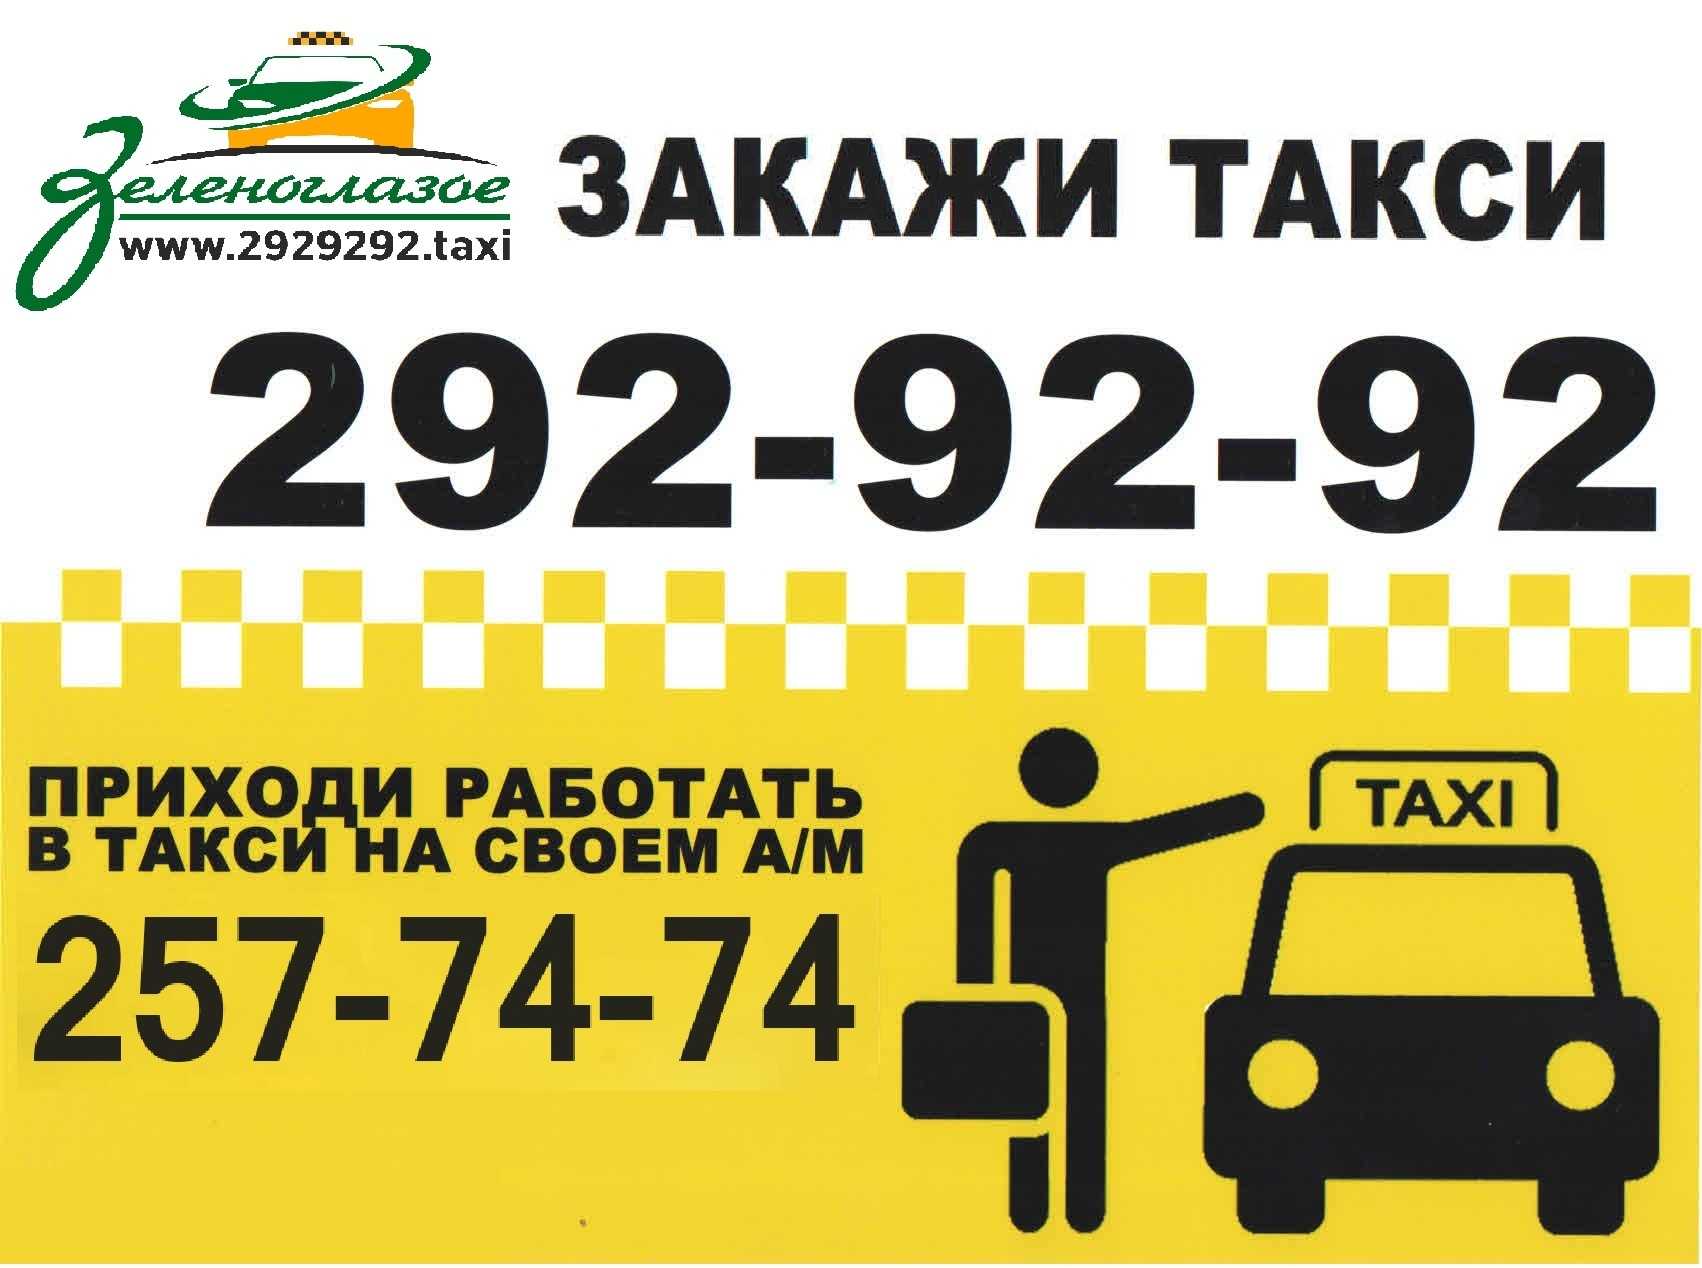 Вызвать такси дешево телефон. Закажи такси. Самое дешевое такси номер. Такси Уфа. Номер недорогого такси.